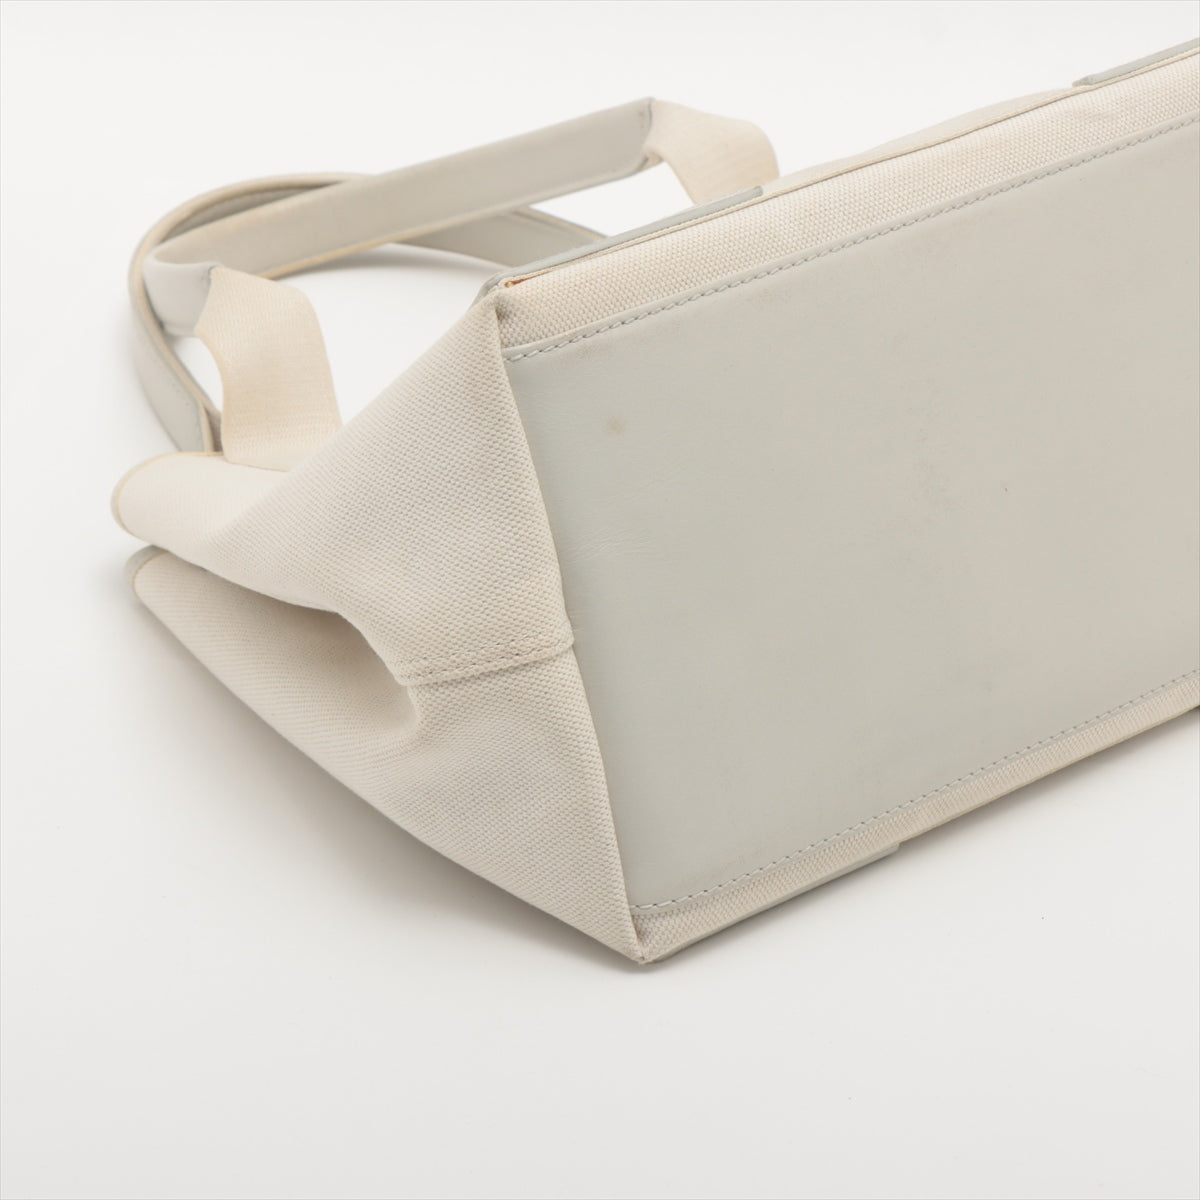 Balenciaga Navy Cabas Canvas & leather Tote bag White 339933